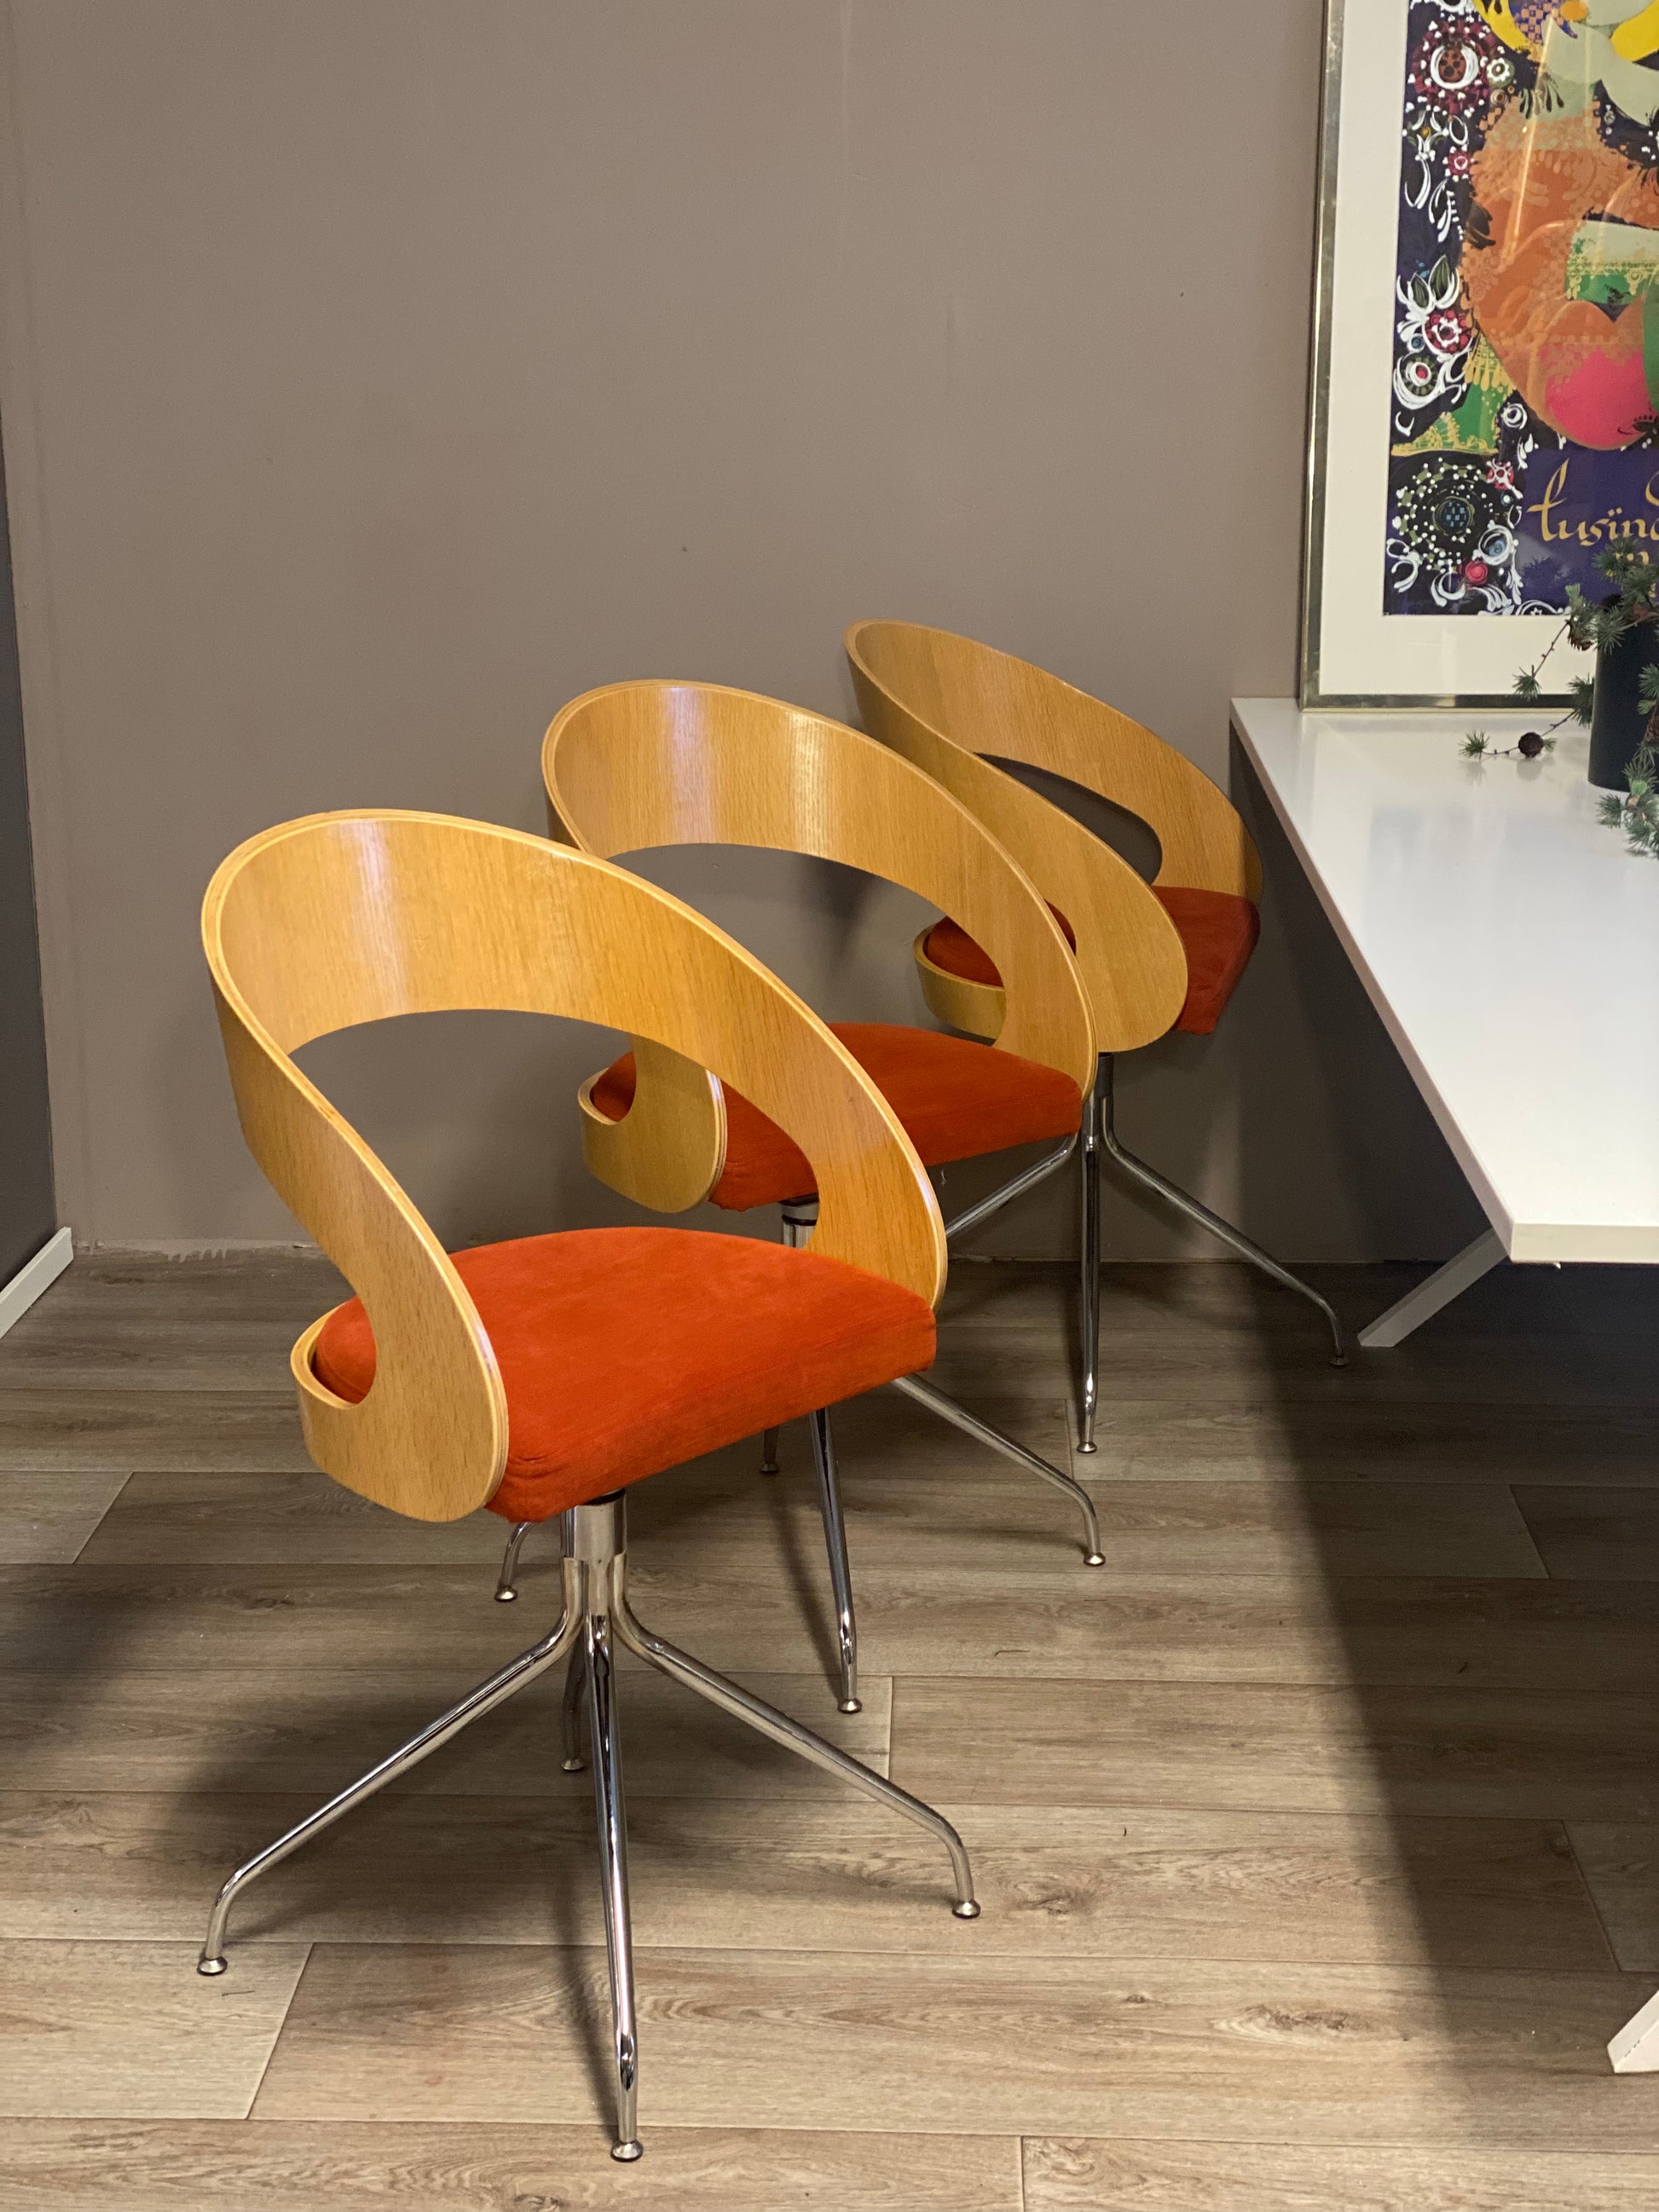 Rocka designstoler Dan Form - Kvalitetsbrukt Møbel fra Hjembruket på Hjembruket